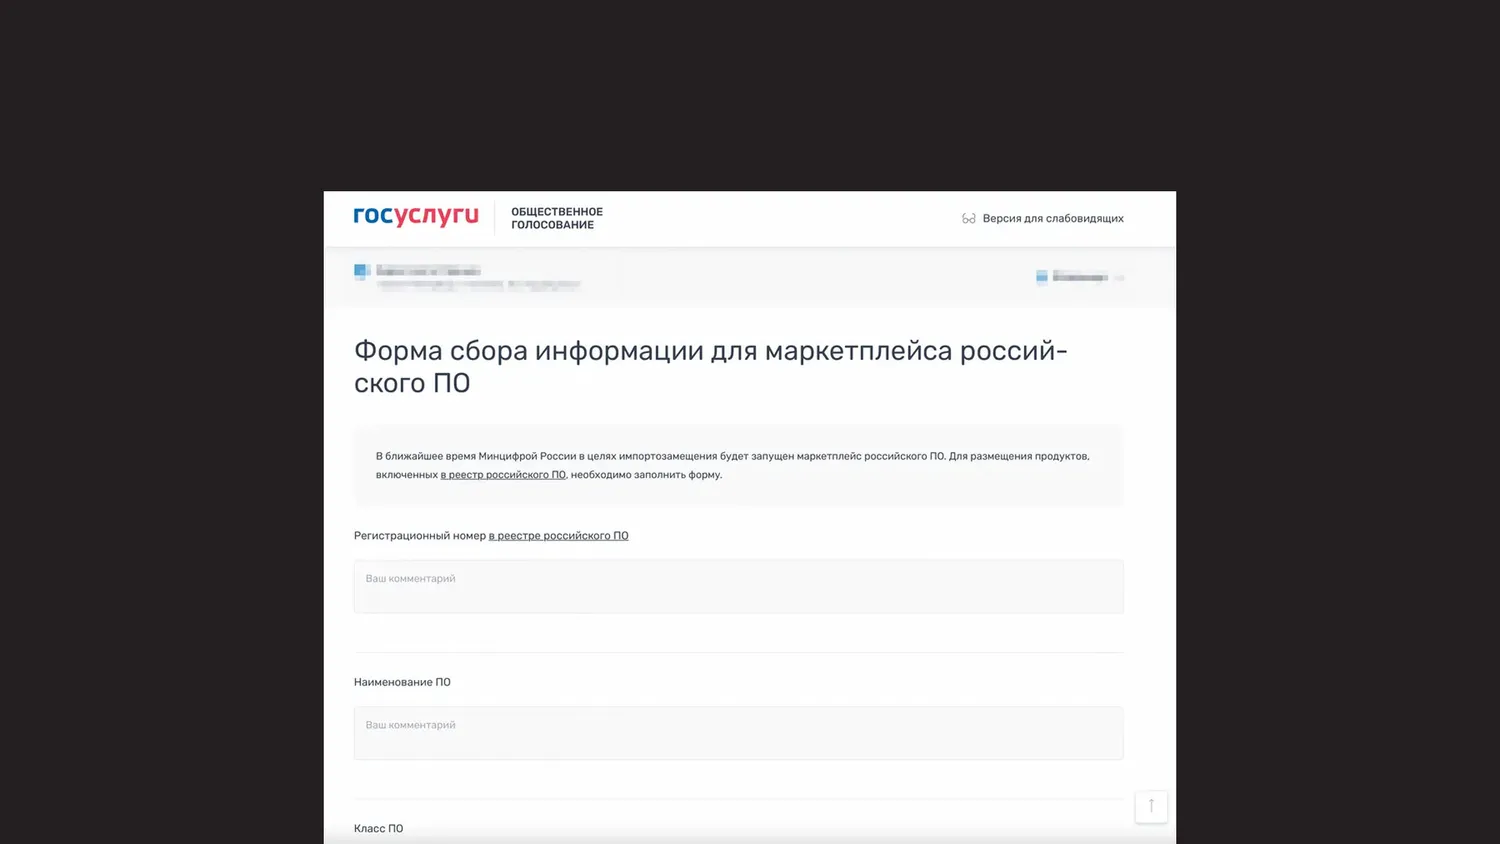 Министерство цифрового развития готовит к выпуску свой собственный маркетплейс российского ПО